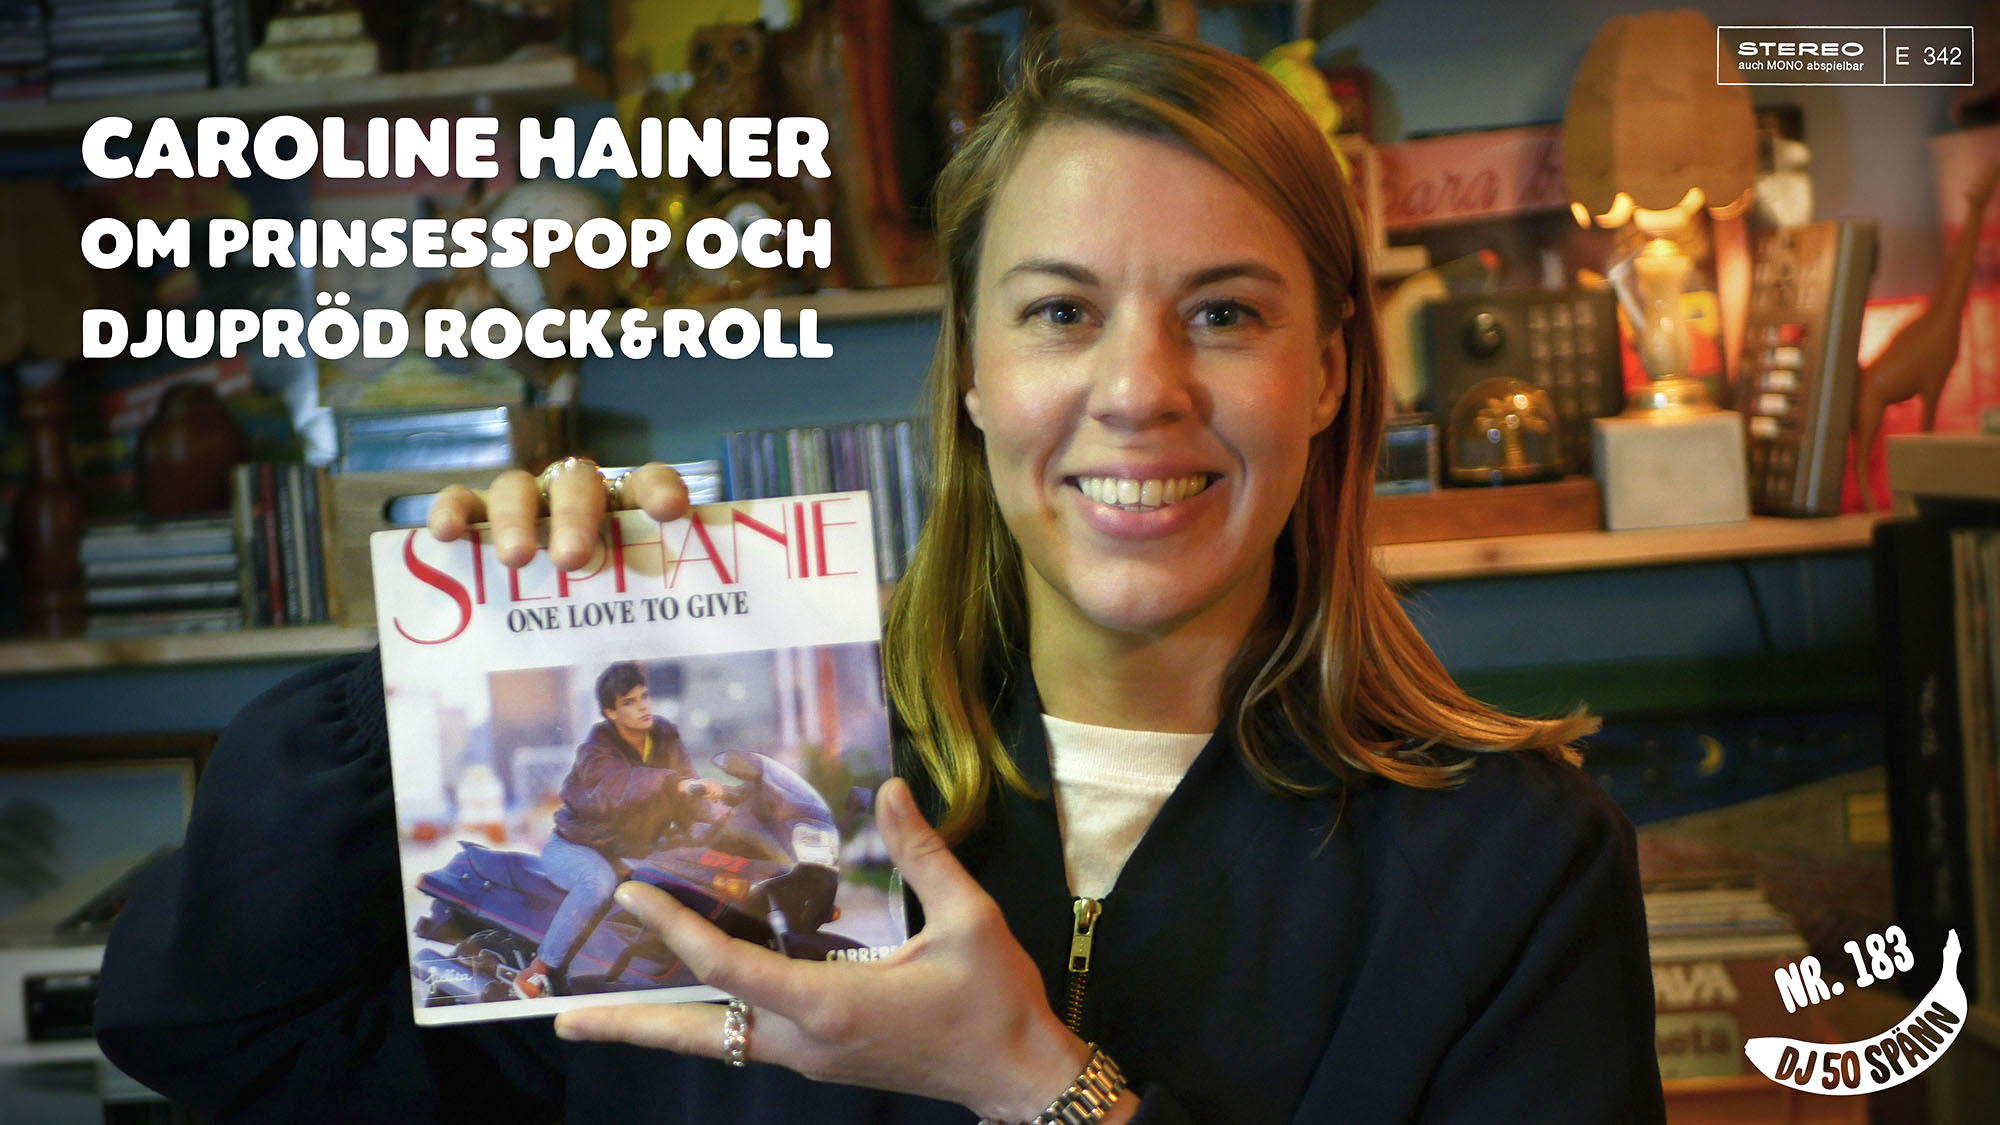 DJ50:- nr 183: Caroline Hainer om prinsesspop och djupröd rock&roll